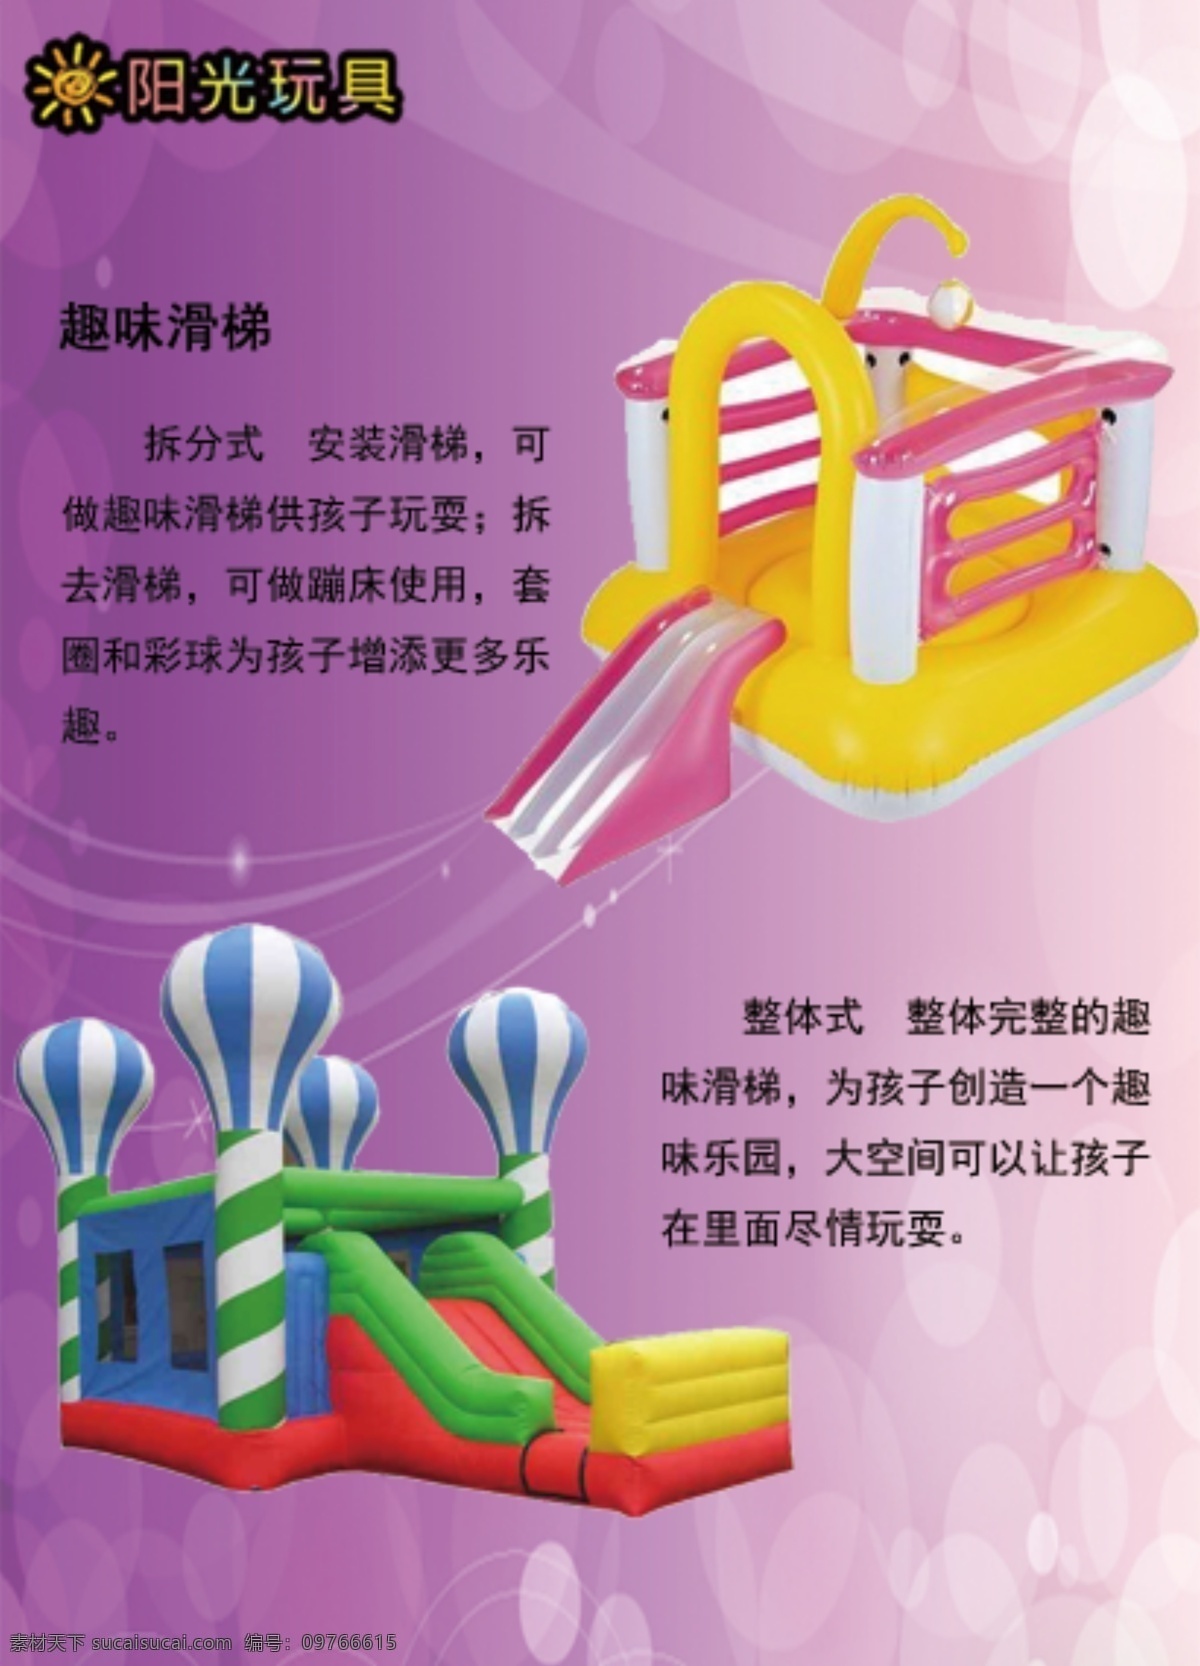 玩具 趣味 滑梯 介绍 宣传册 紫色